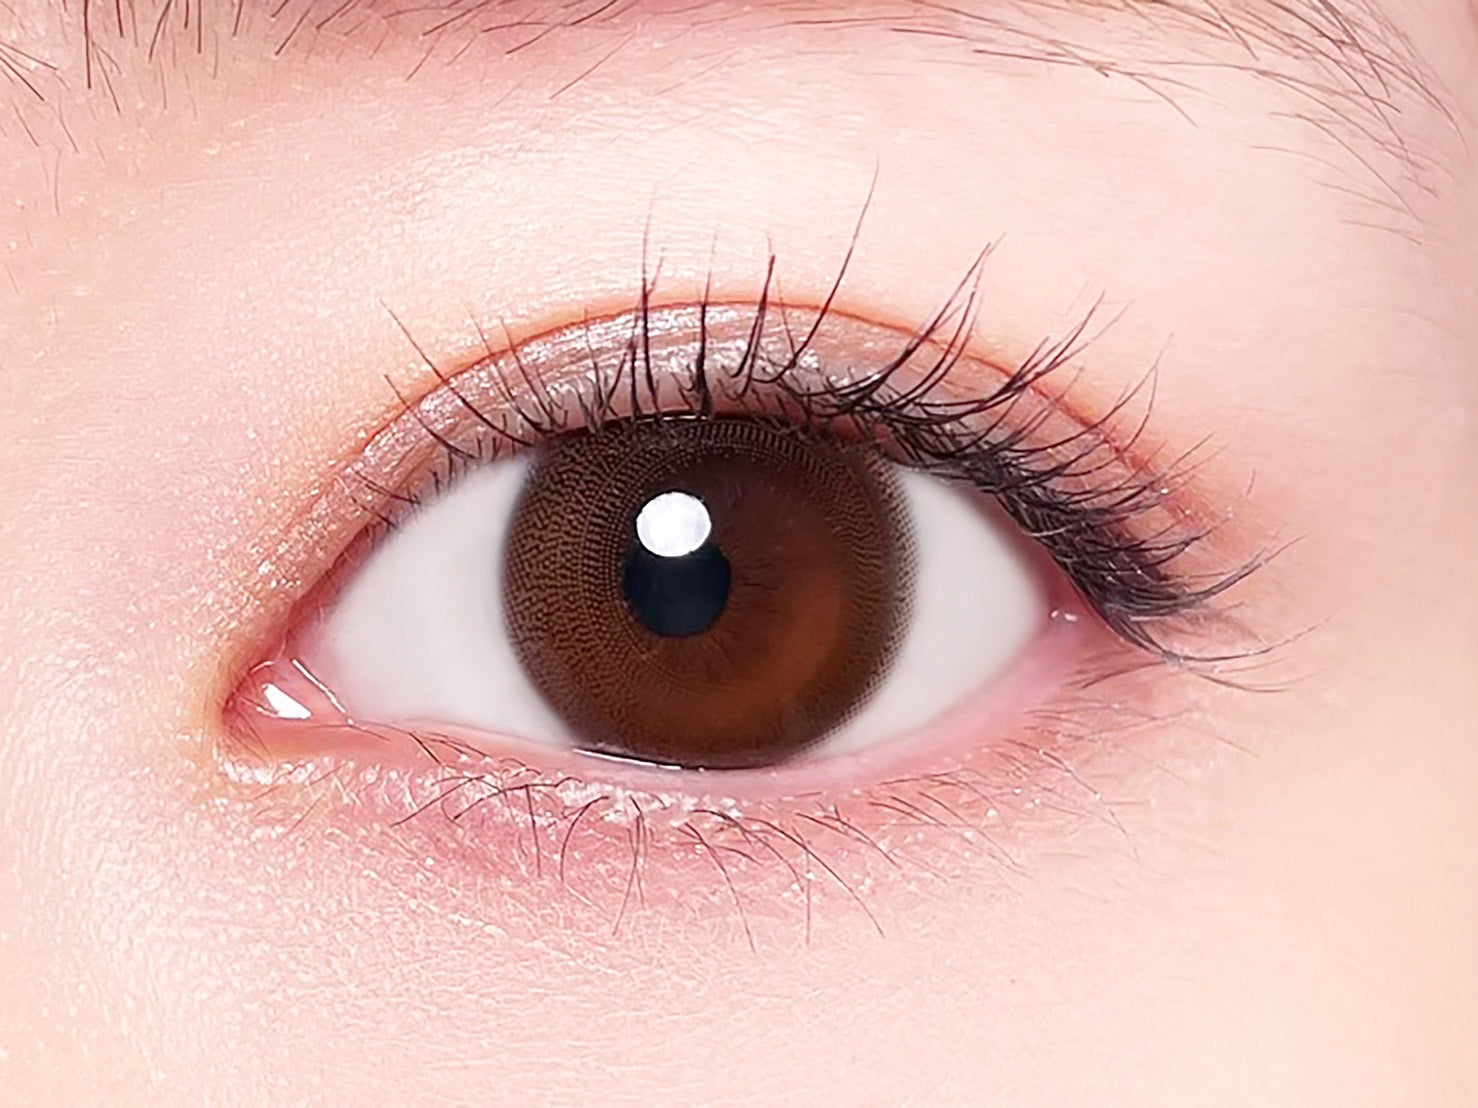 カラーコンタクトレンズ、BELTA ピュアブラウン | 2weekを装用した状態の目のアップ画像